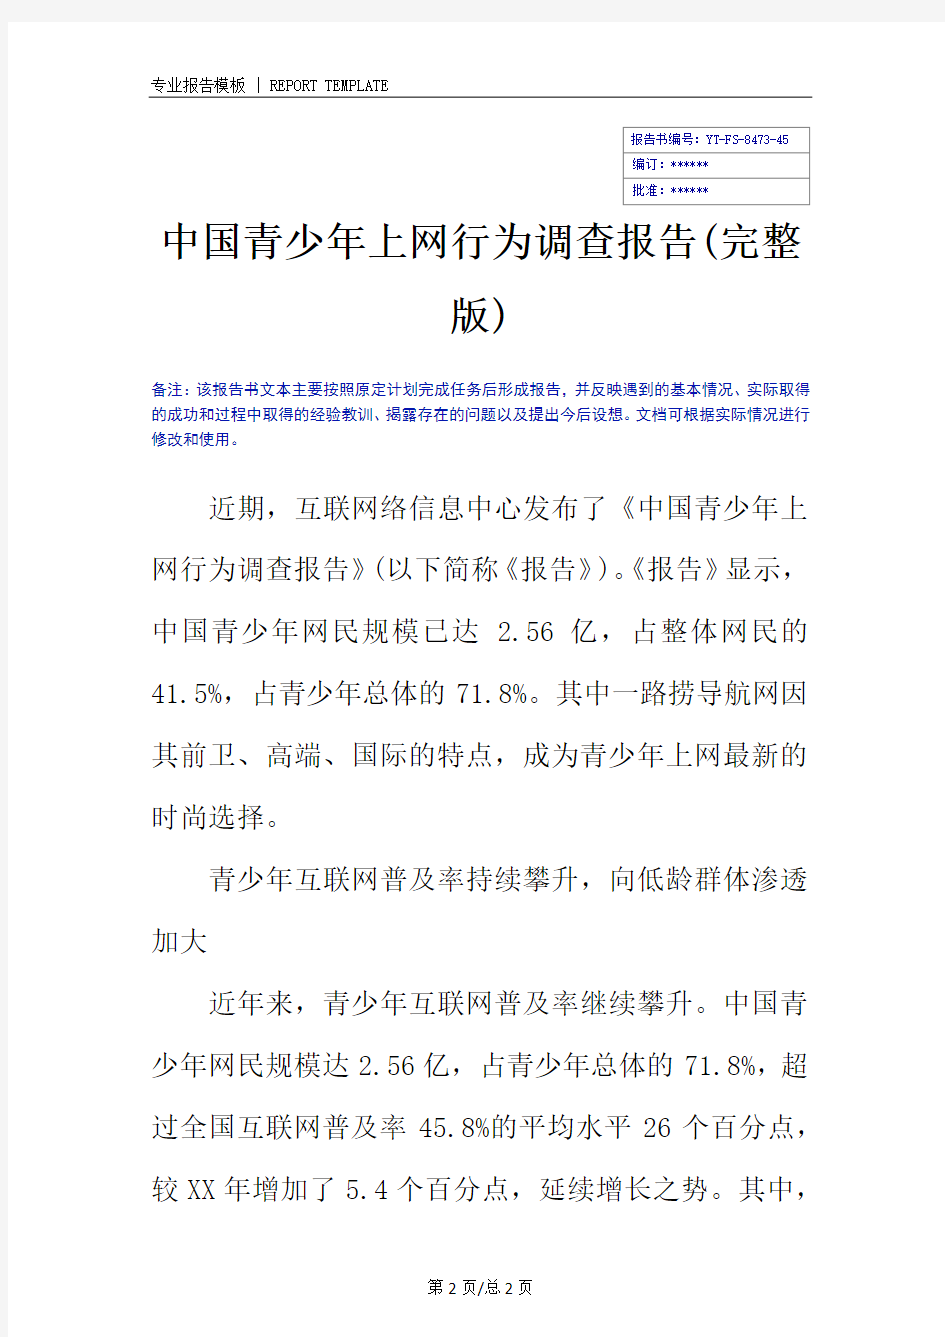 中国青少年上网行为调查报告(完整版)_1